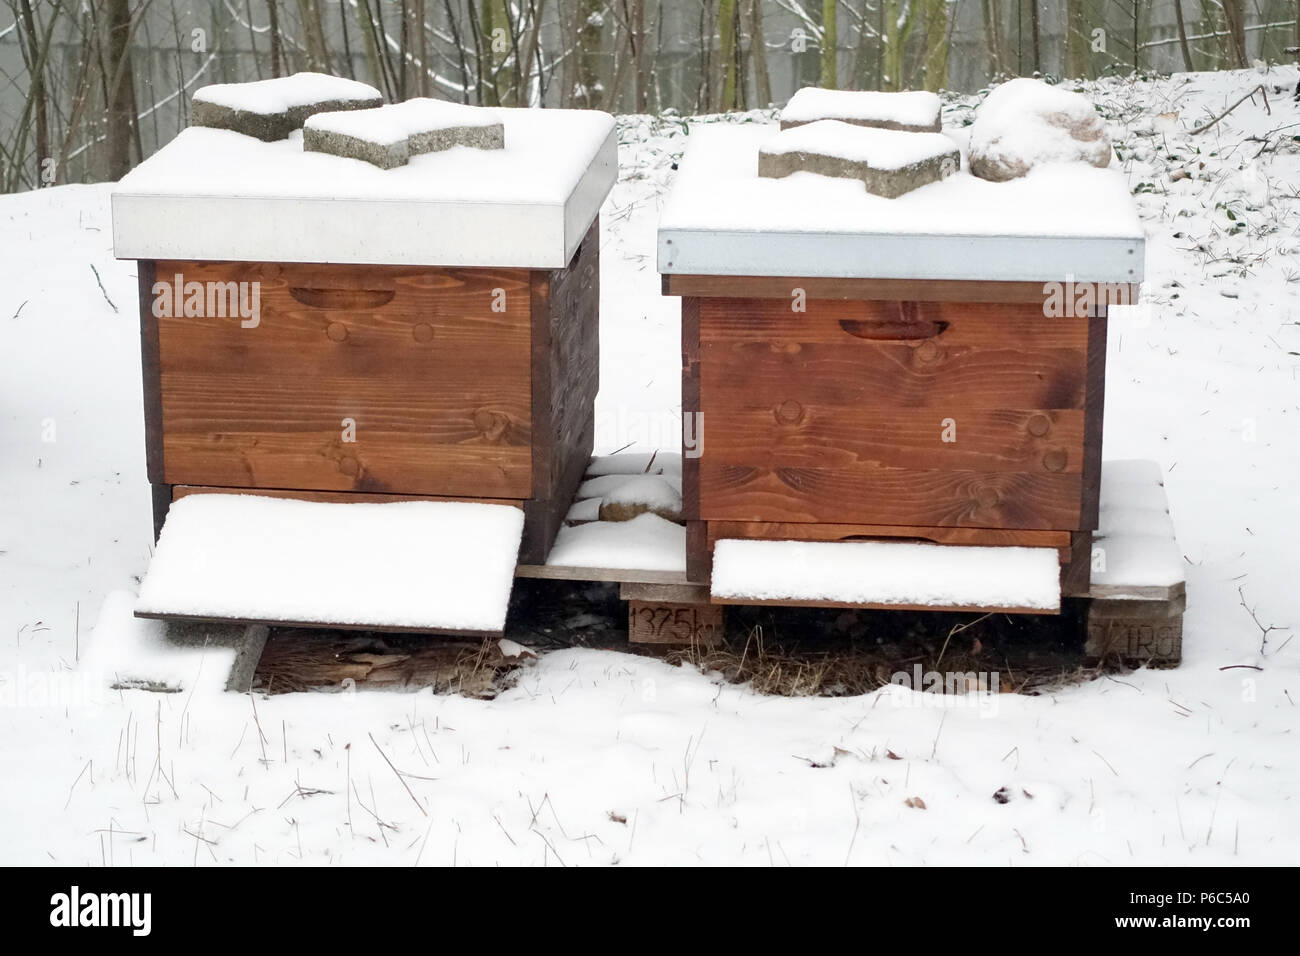 Berlin, Germany - Bees hunt in winter in a snowy garden Stock Photo